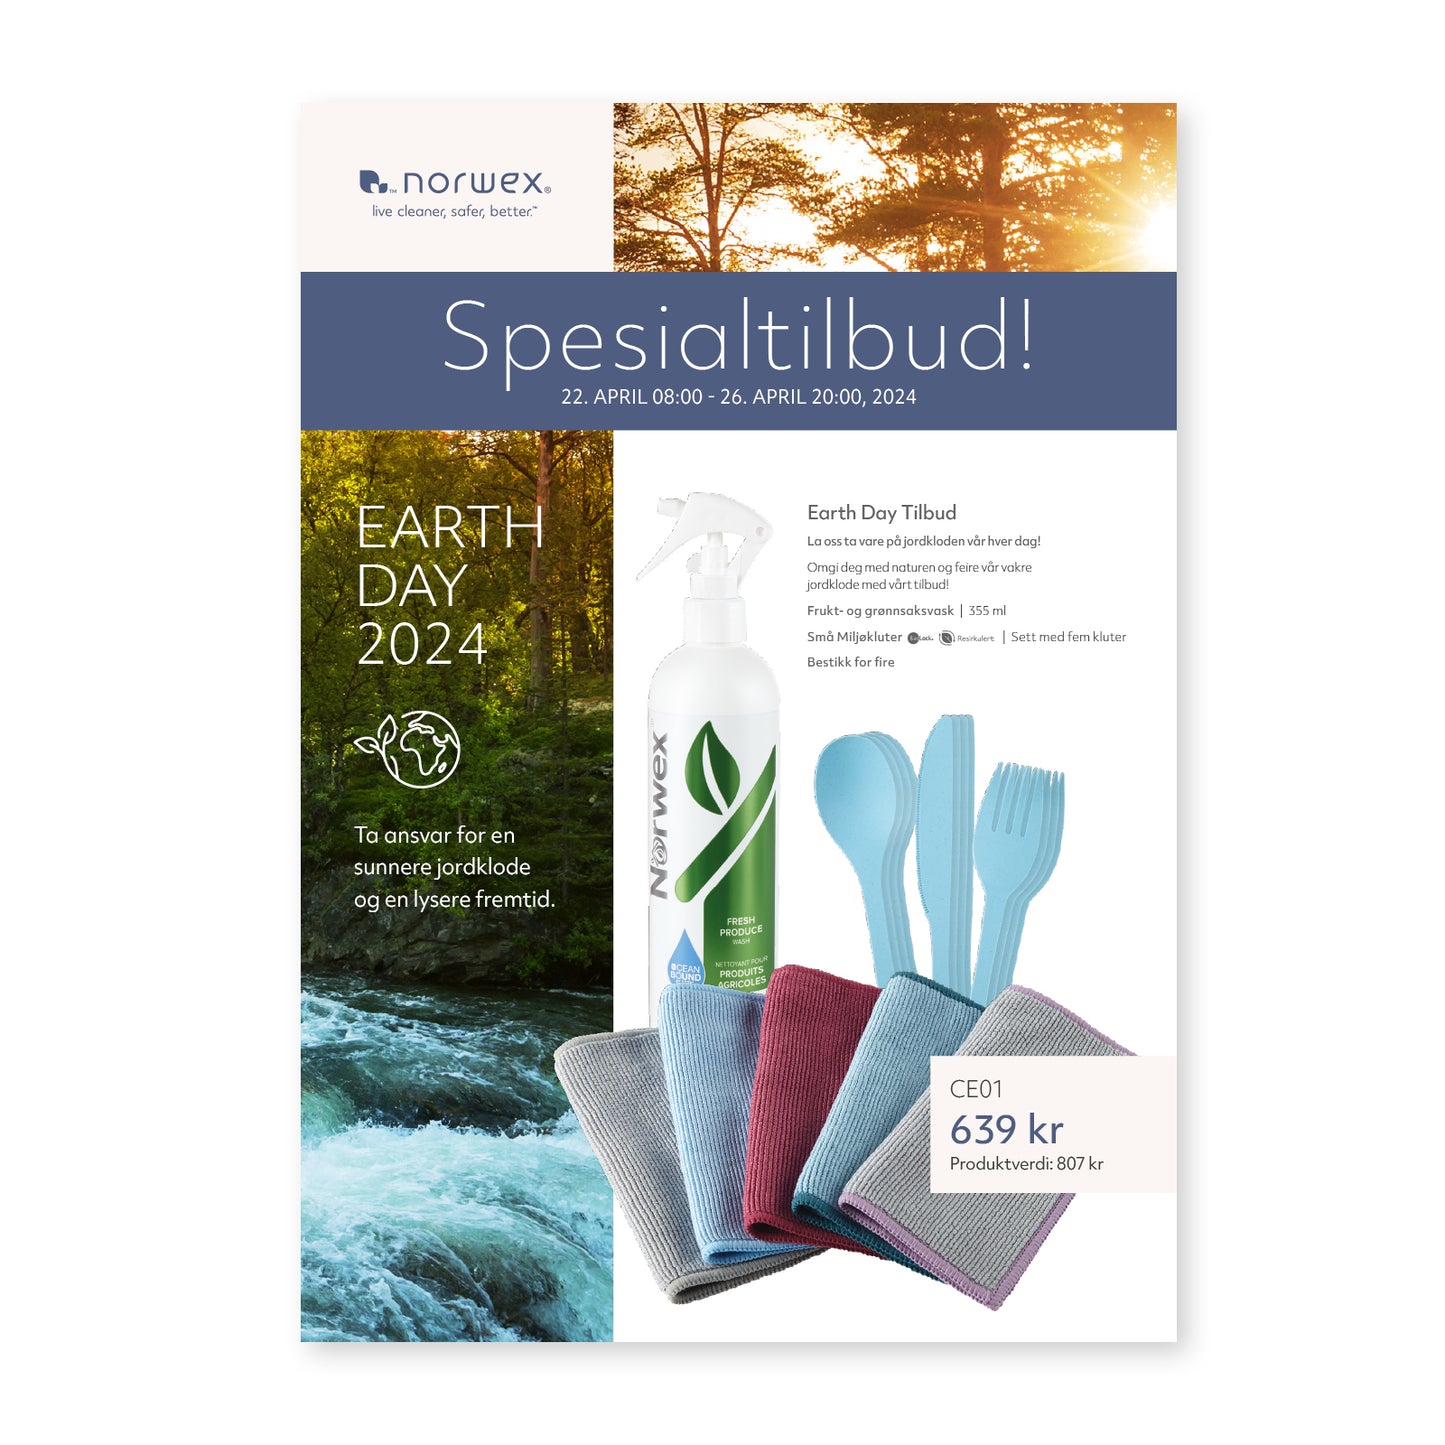 Earth Day 2024 - Spesialtilbud! - A4 PDF